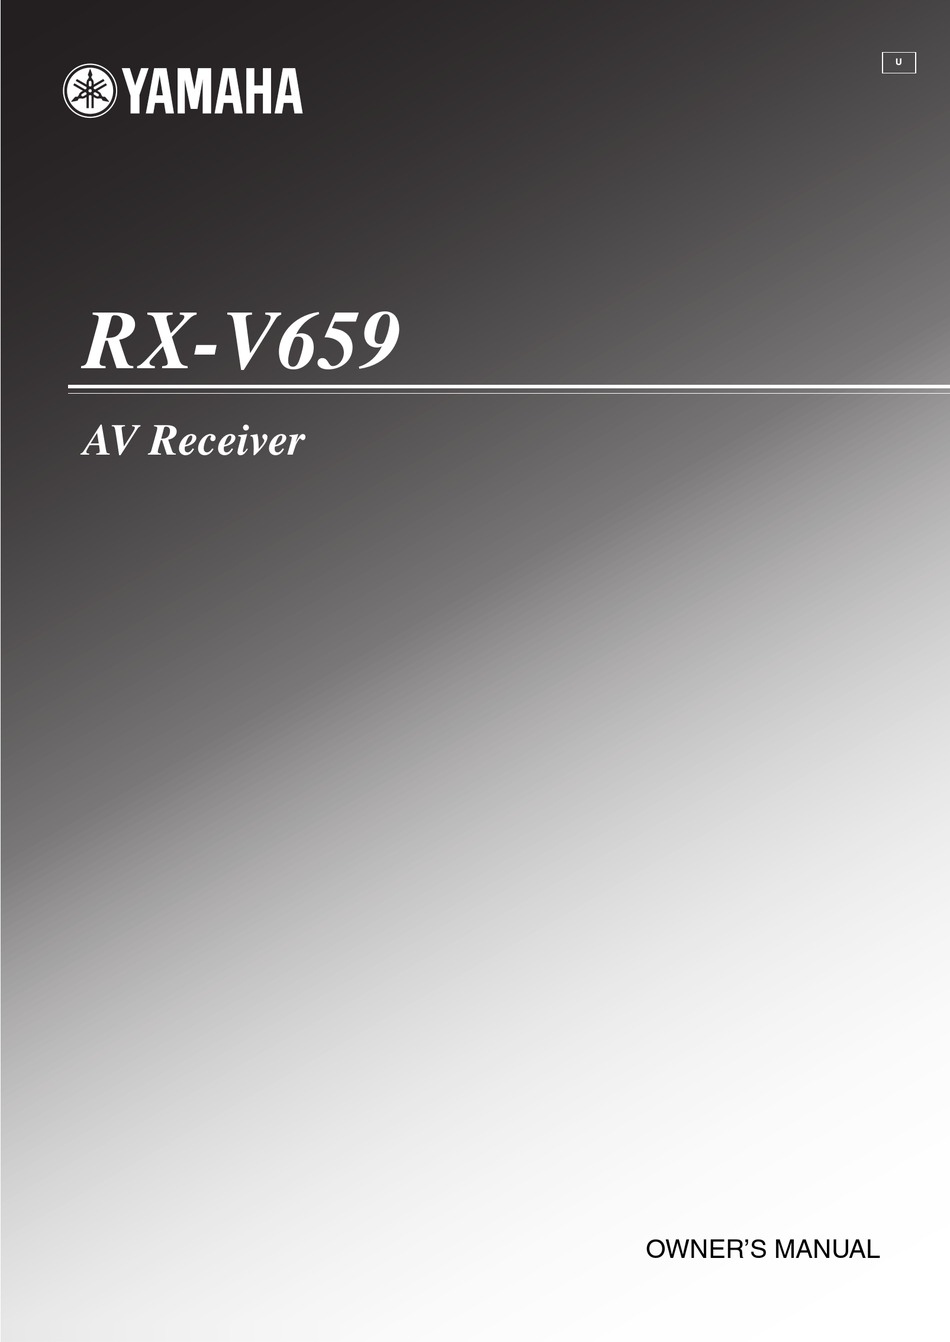 YAMAHA RX-V659 OWNER'S MANUAL Pdf Download | ManualsLib